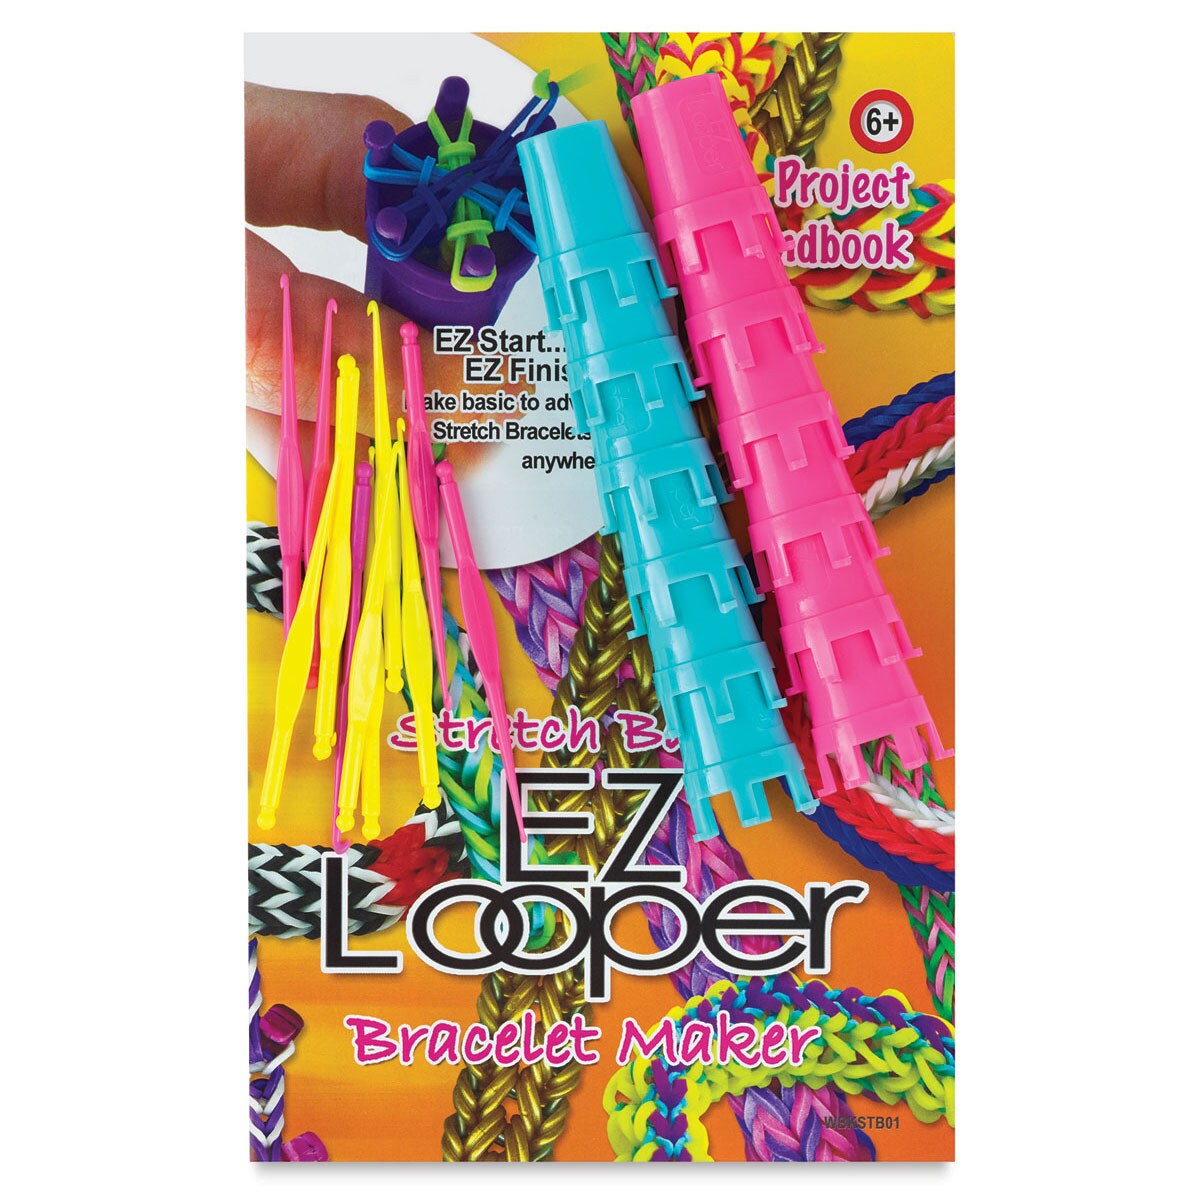 Pepperell EZ Looper Bracelet Maker Tool Kit